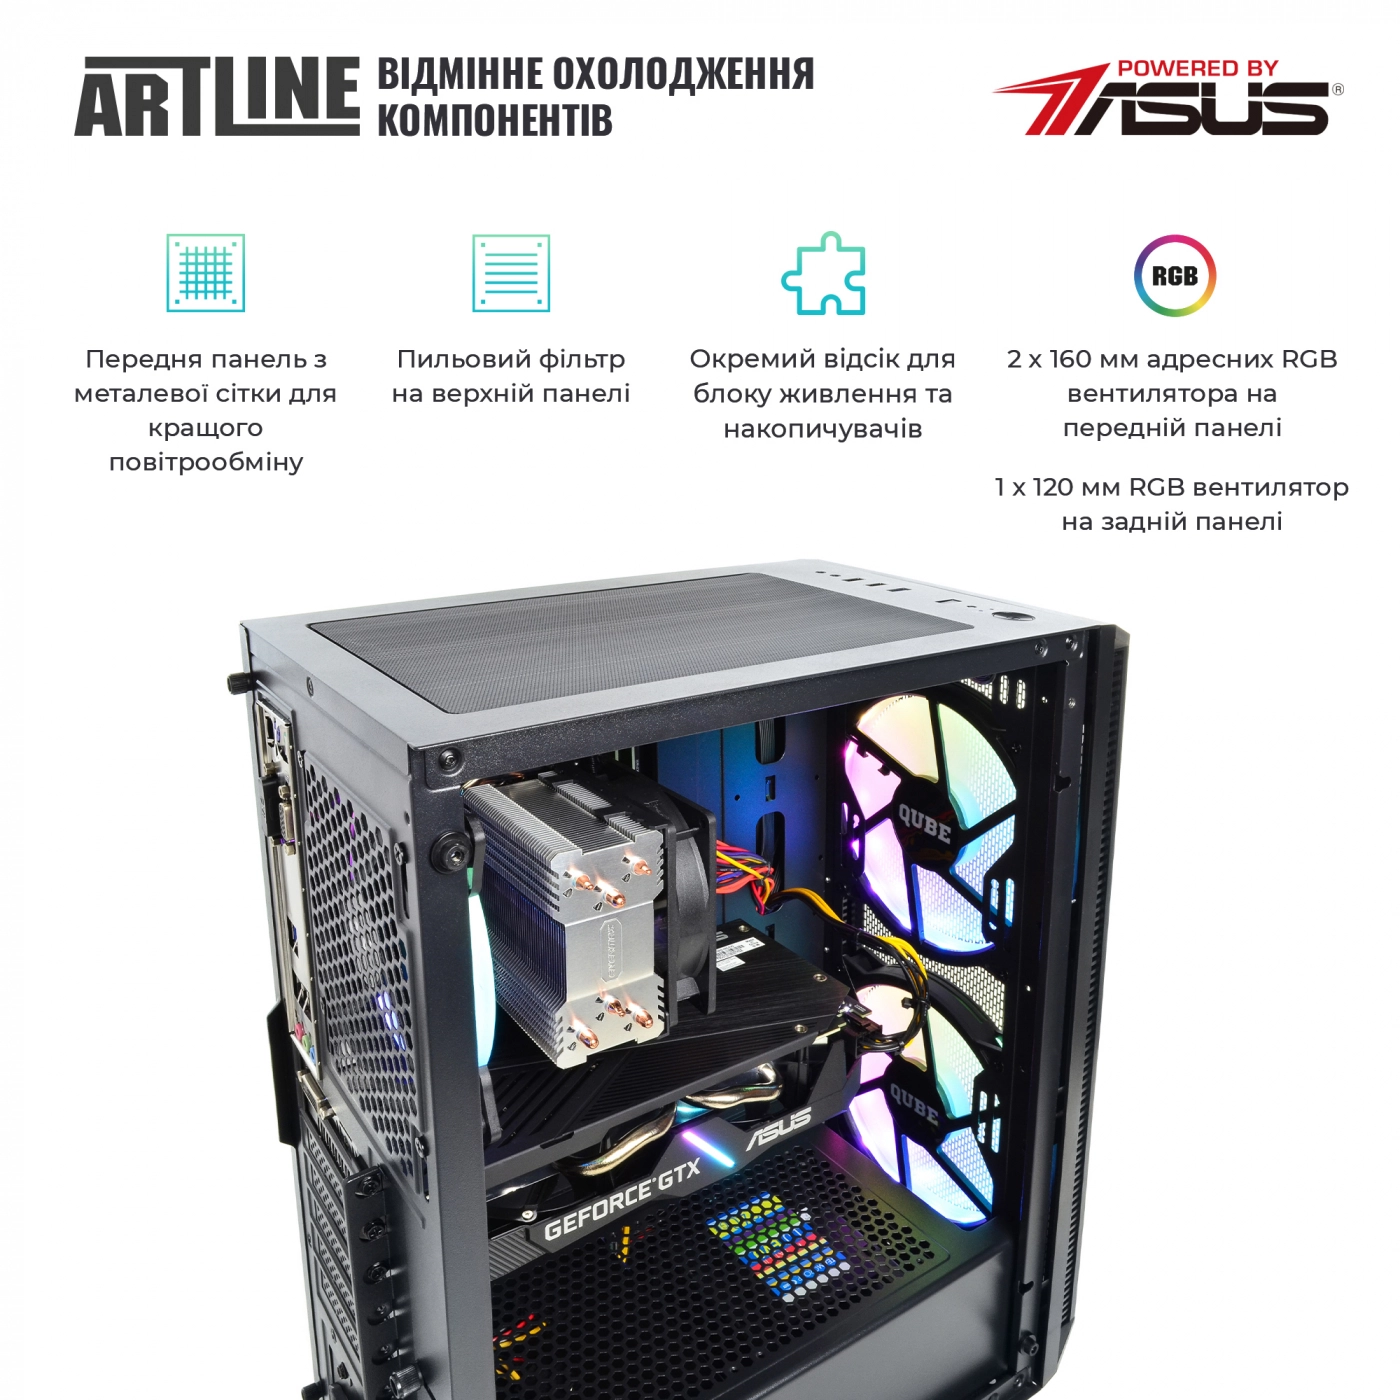 Купить Компьютер ARTLINE Gaming X55v25 - фото 2